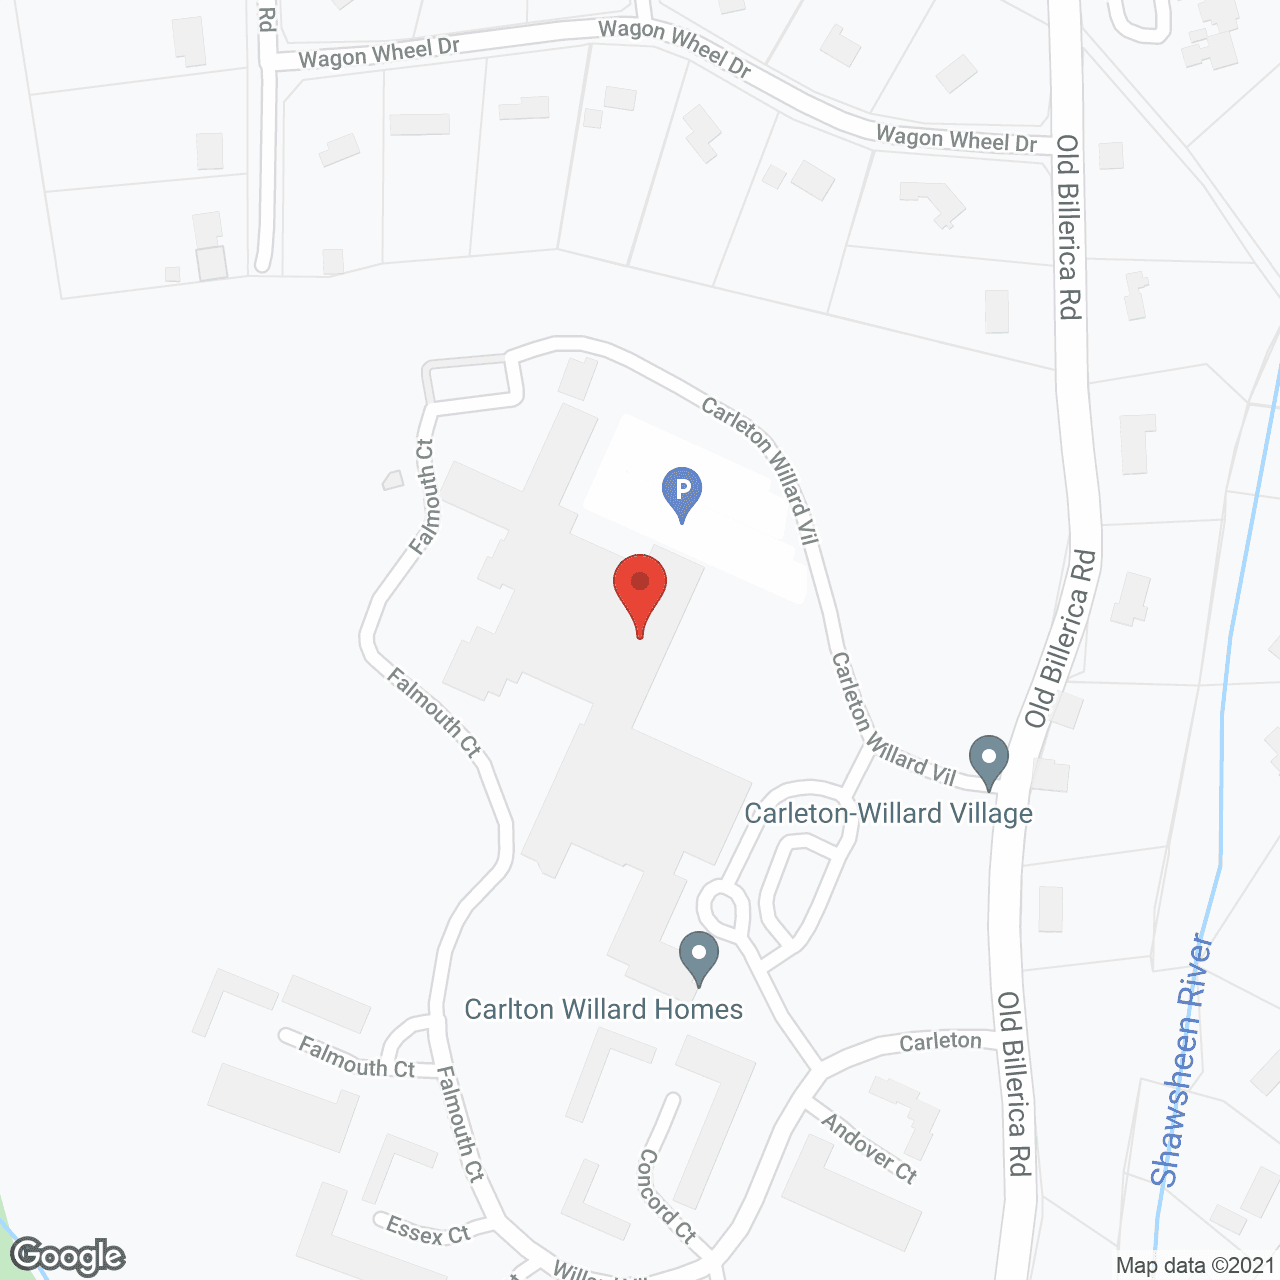 Carleton-Willard Village in google map